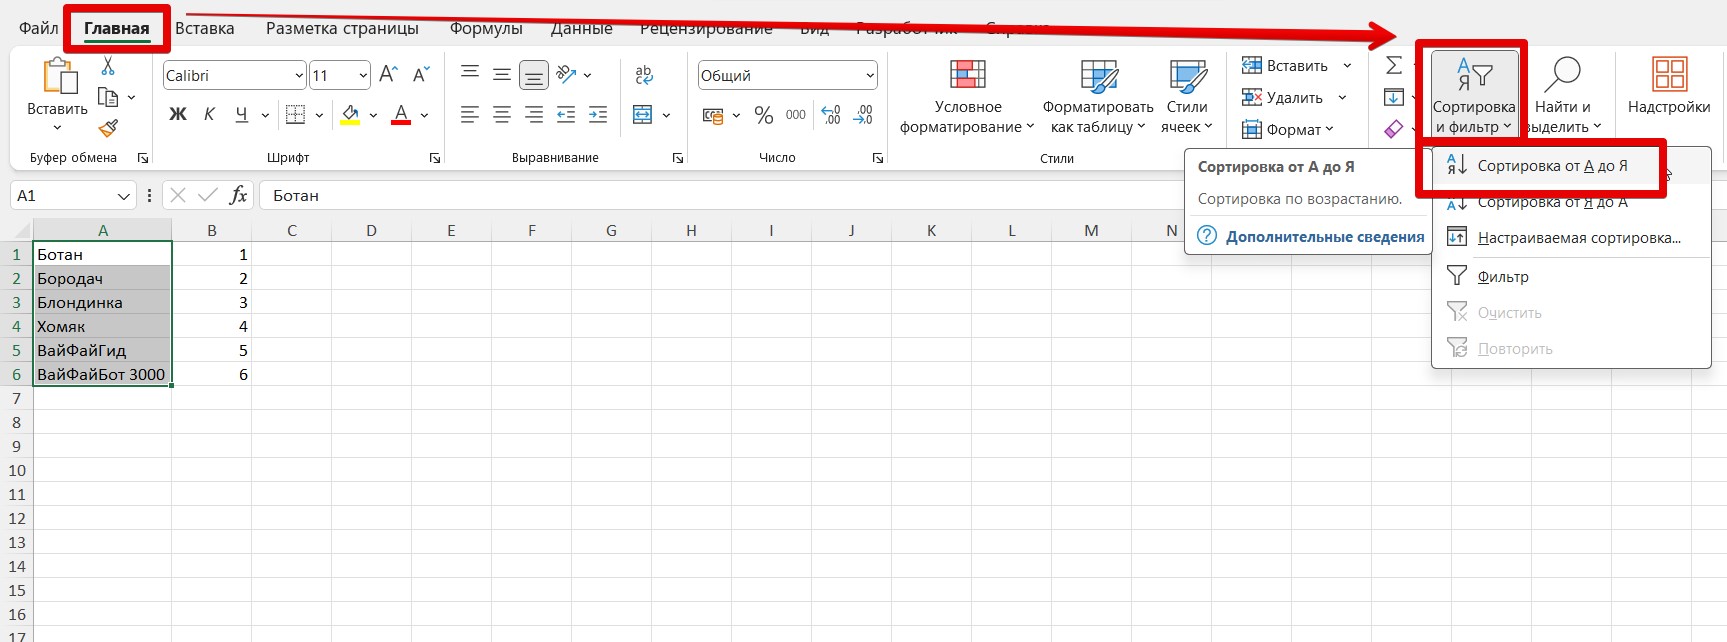 Краткое руководство: сортировка данных на листе Excel